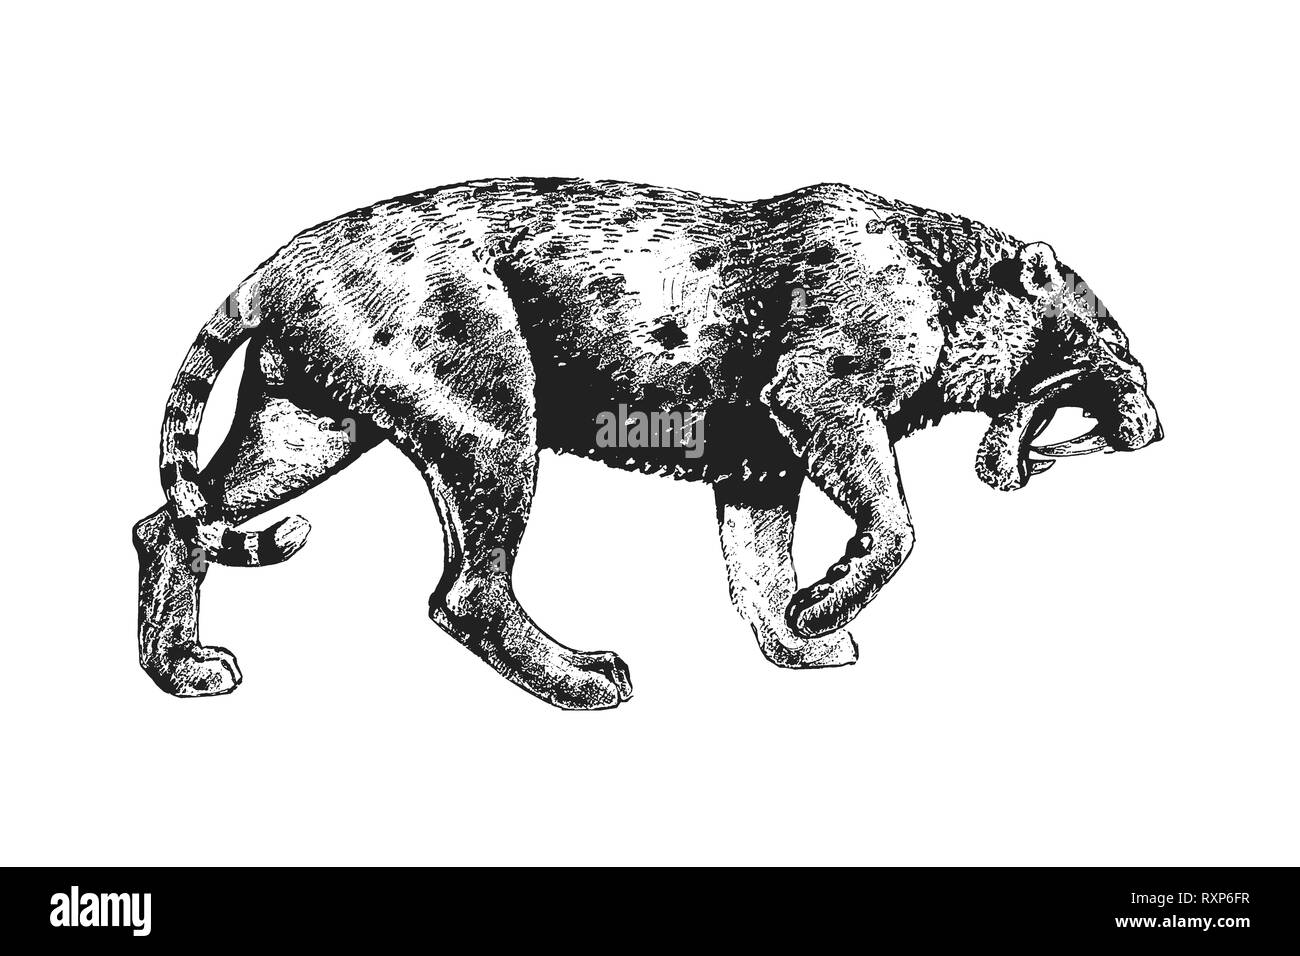 Dessin de chat à dents de sabre. Illustration d'animaux. Attaque de chat à dents de sabre. Banque D'Images